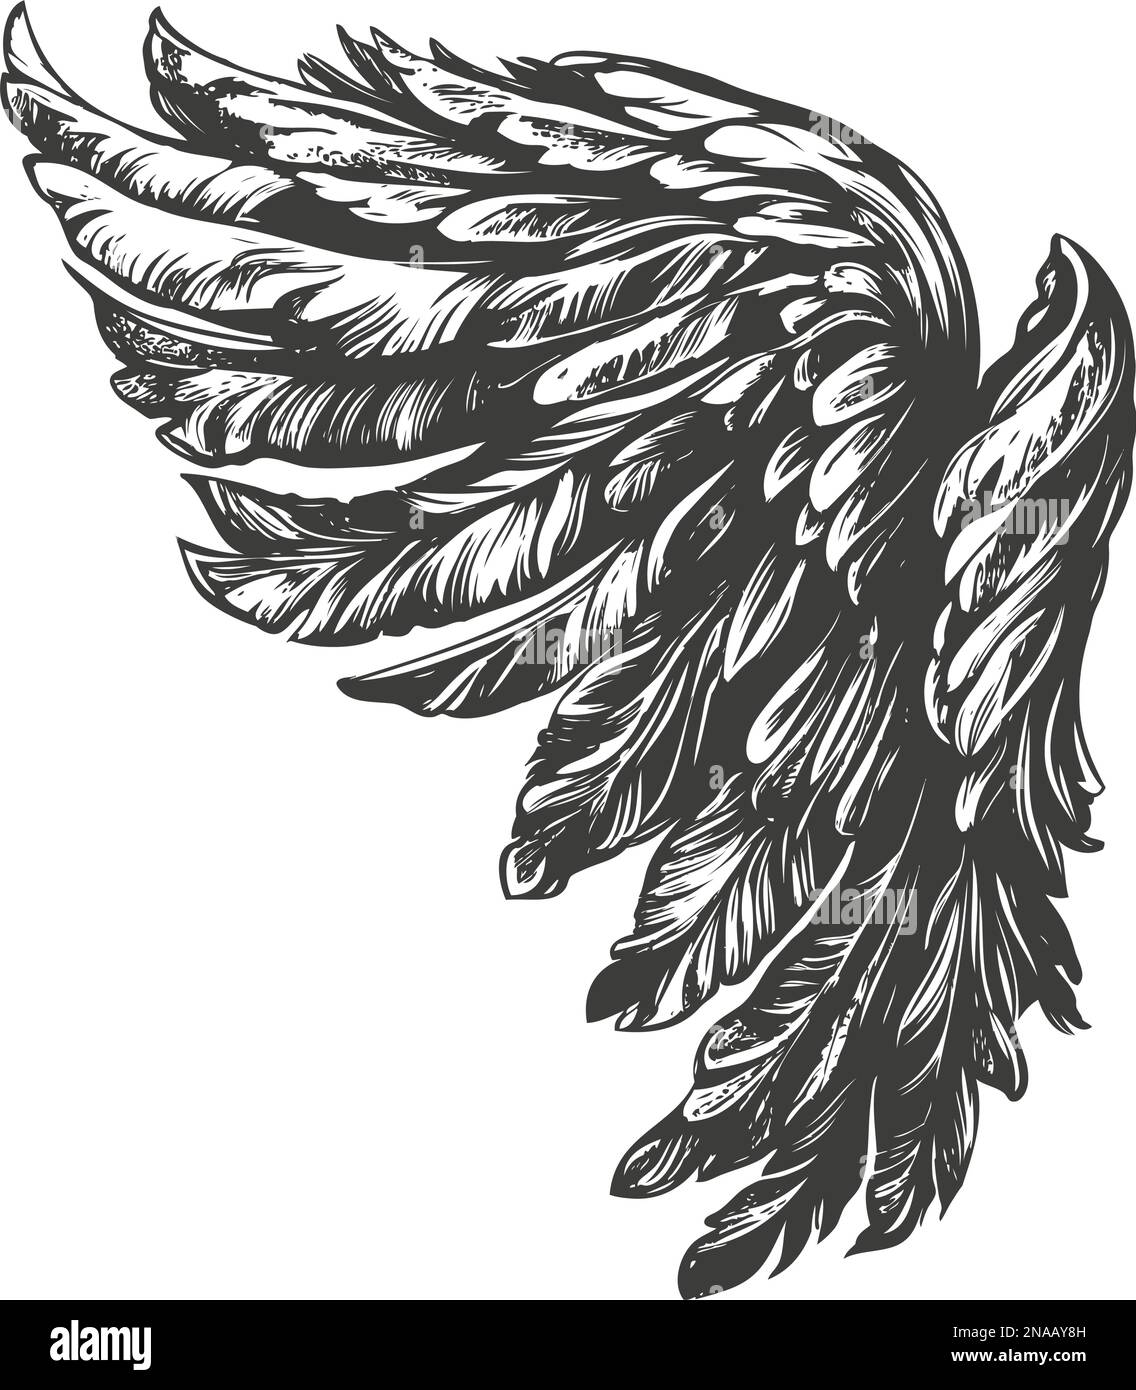 Angel Wings, Bird Wings collection dessin animé dessin main dessin vectoriel illustration esquisse. Illustration de Vecteur